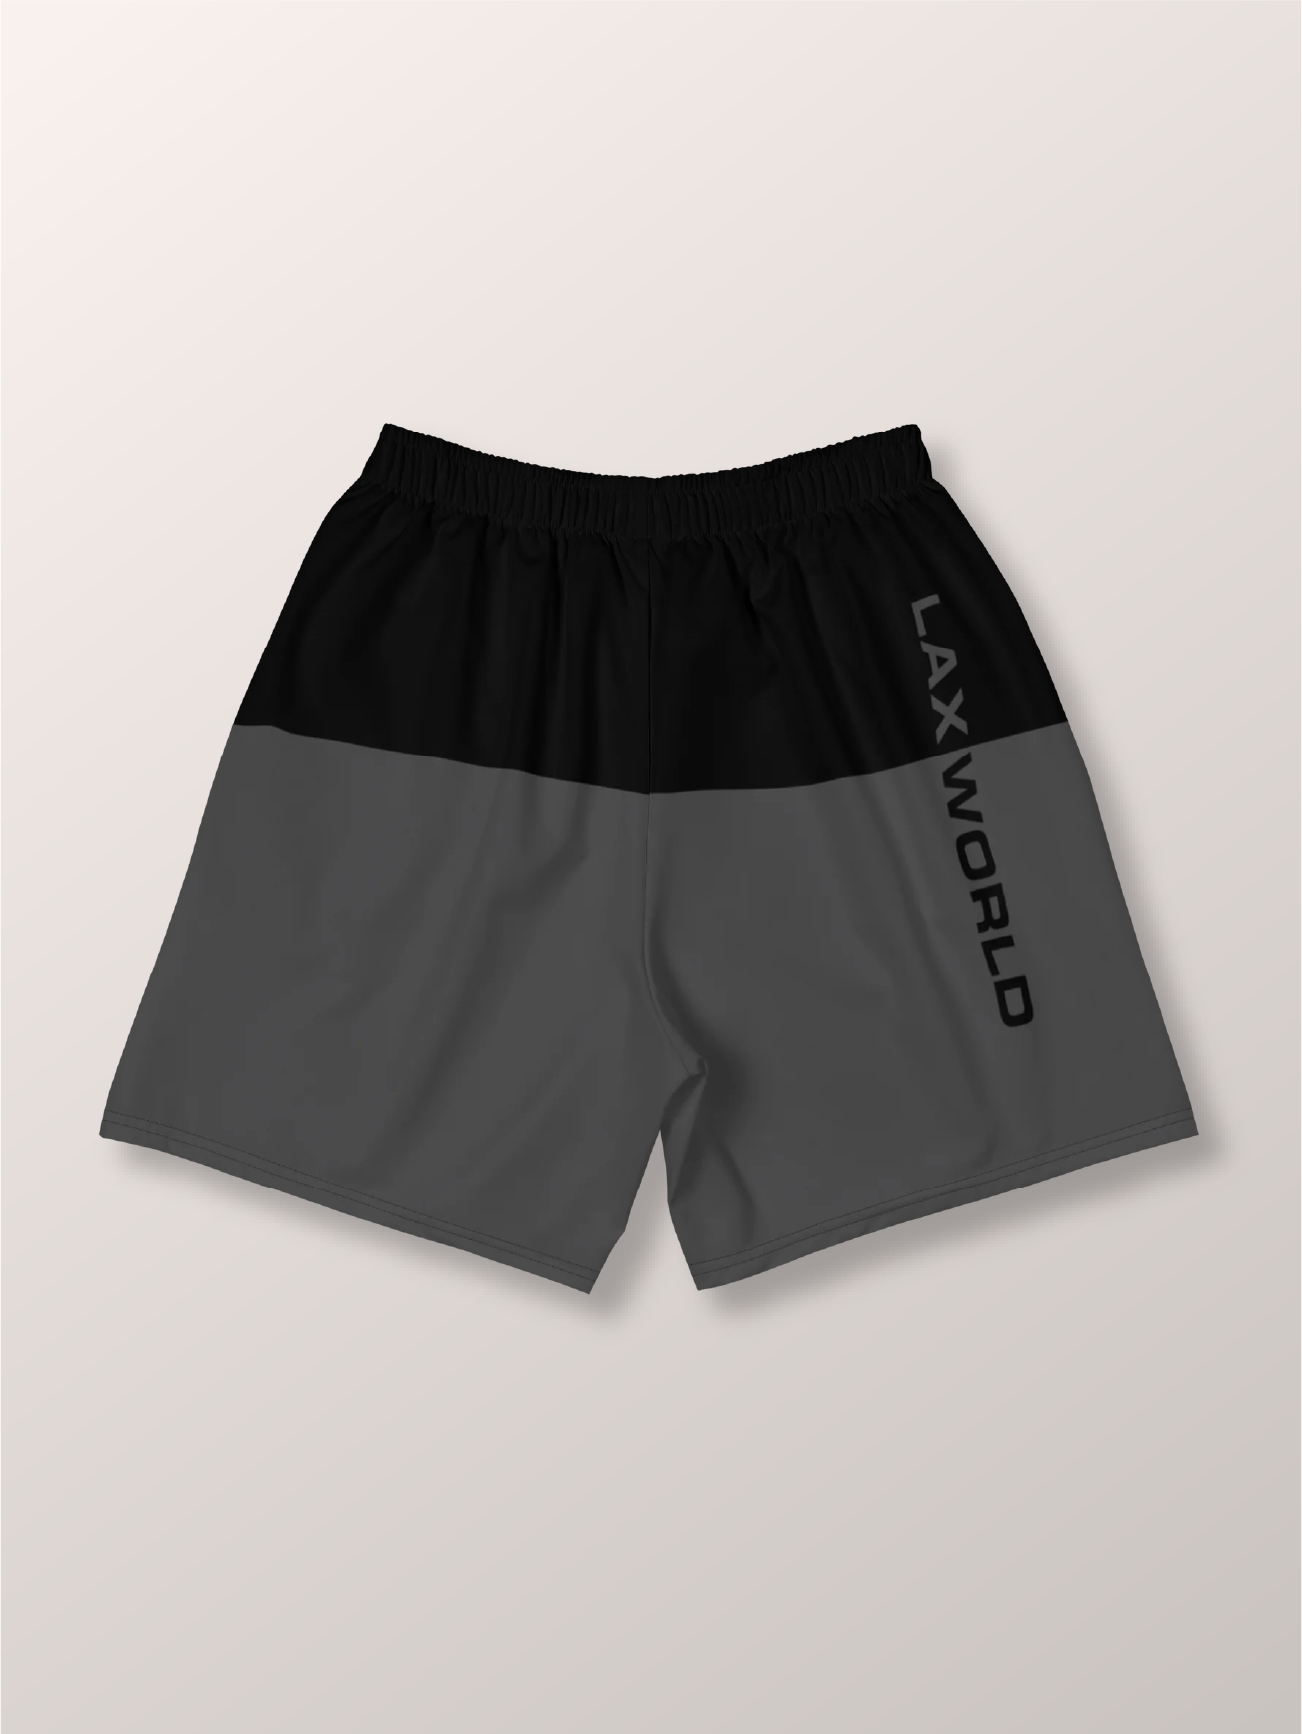 Premium Creator’s Black Athletic Lacrosse Short  - back 